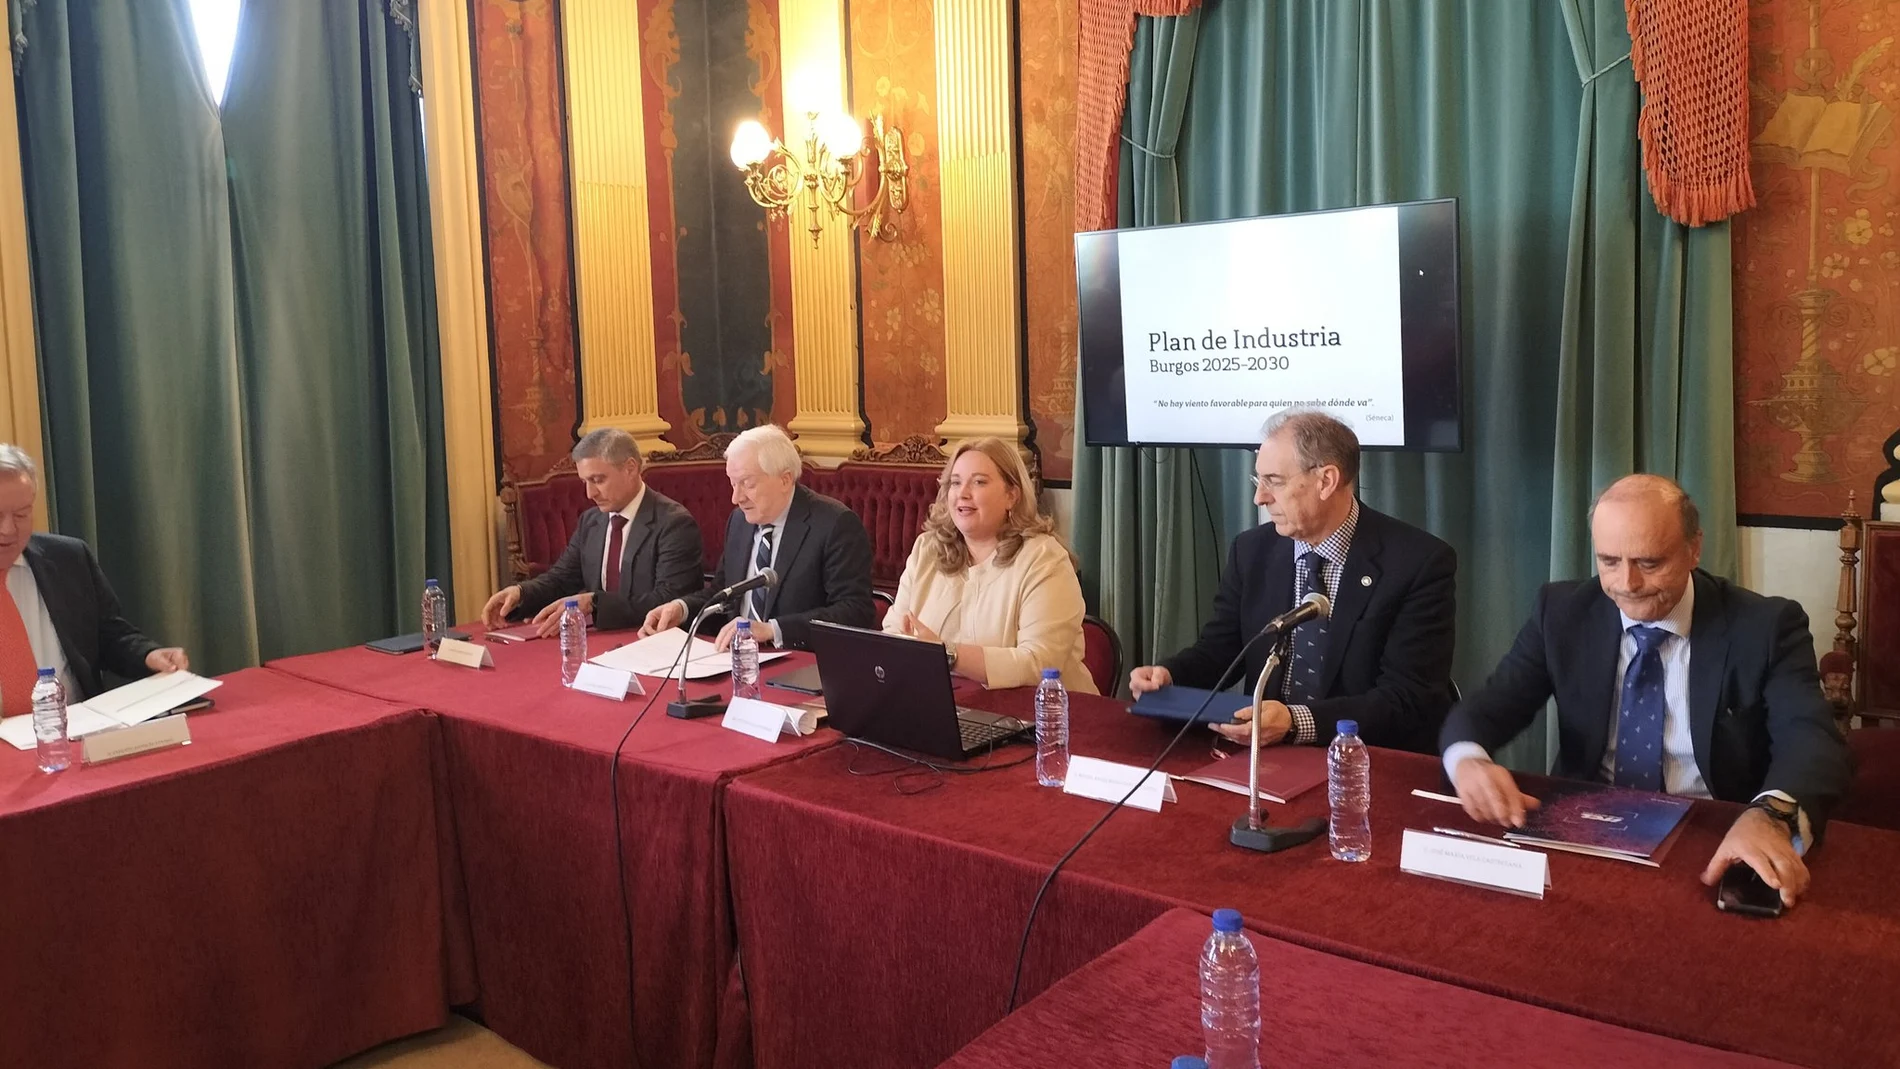 La alcaldesa de Burgos, Cristina Ayala, presenta el Plan